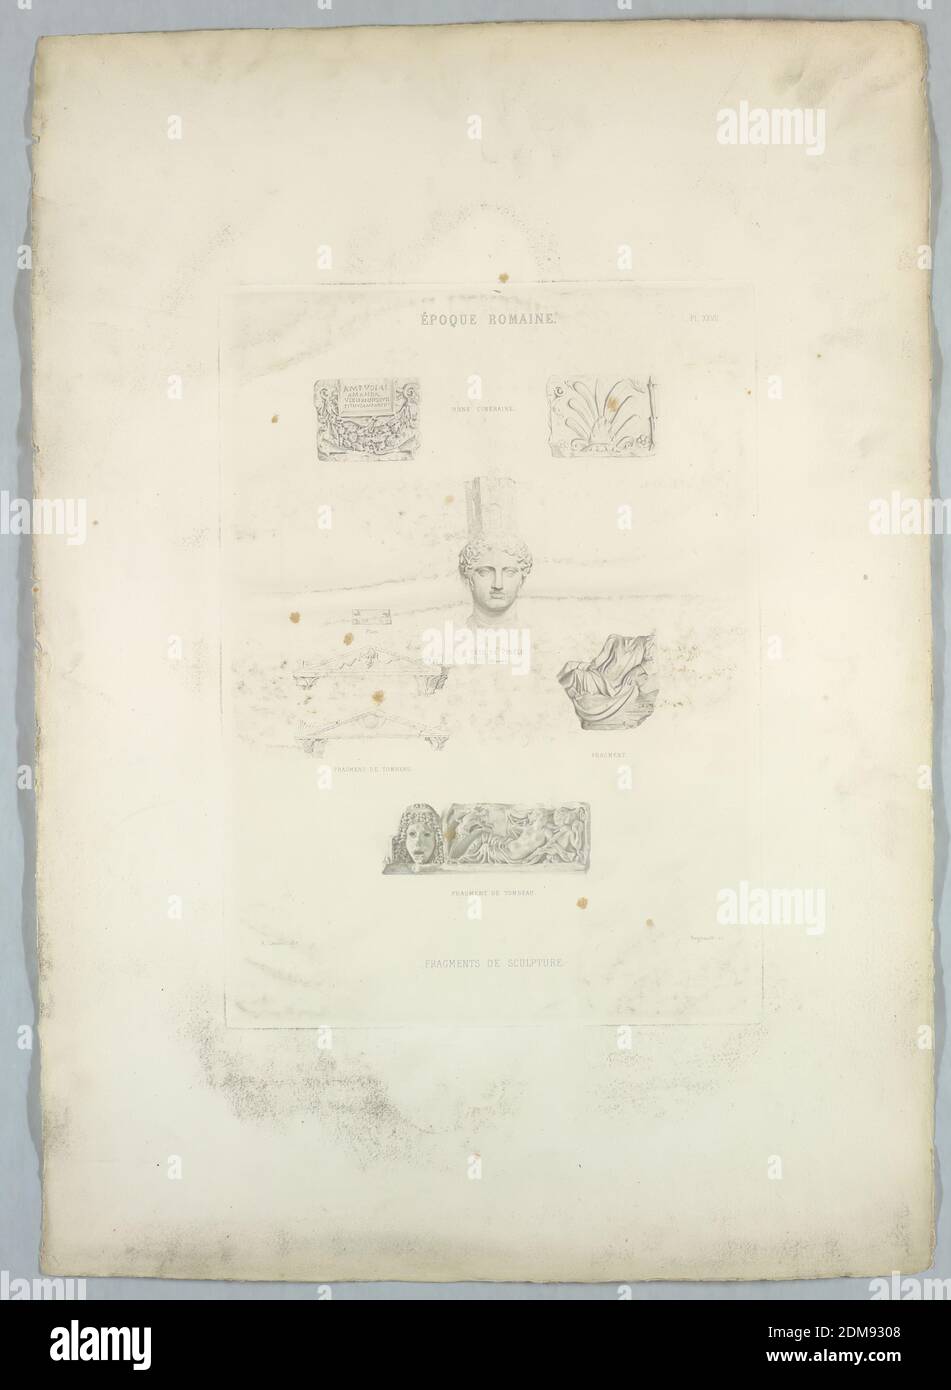 Fragments de Sculpture romaine, A. Lenoir, Nicolas François Regnault, français, 1746 - ca. 1810, gravure sur papier, France, Europe, 18e siècle, impression Banque D'Images